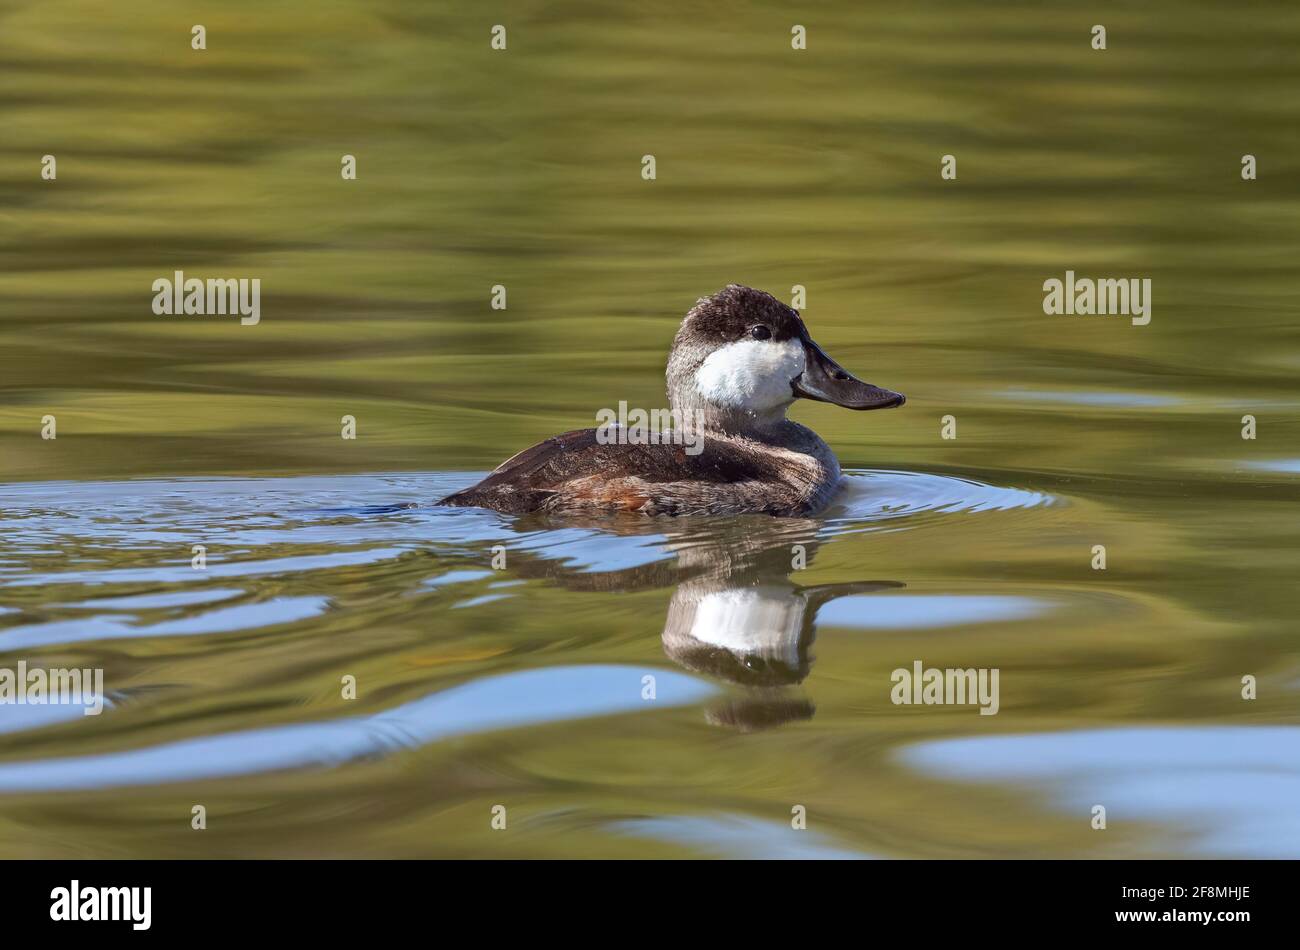 Un drake de Ruddy Duck dans un plumage non reproducteur, nageant dans un lac d'eau verte en automne. Banque D'Images